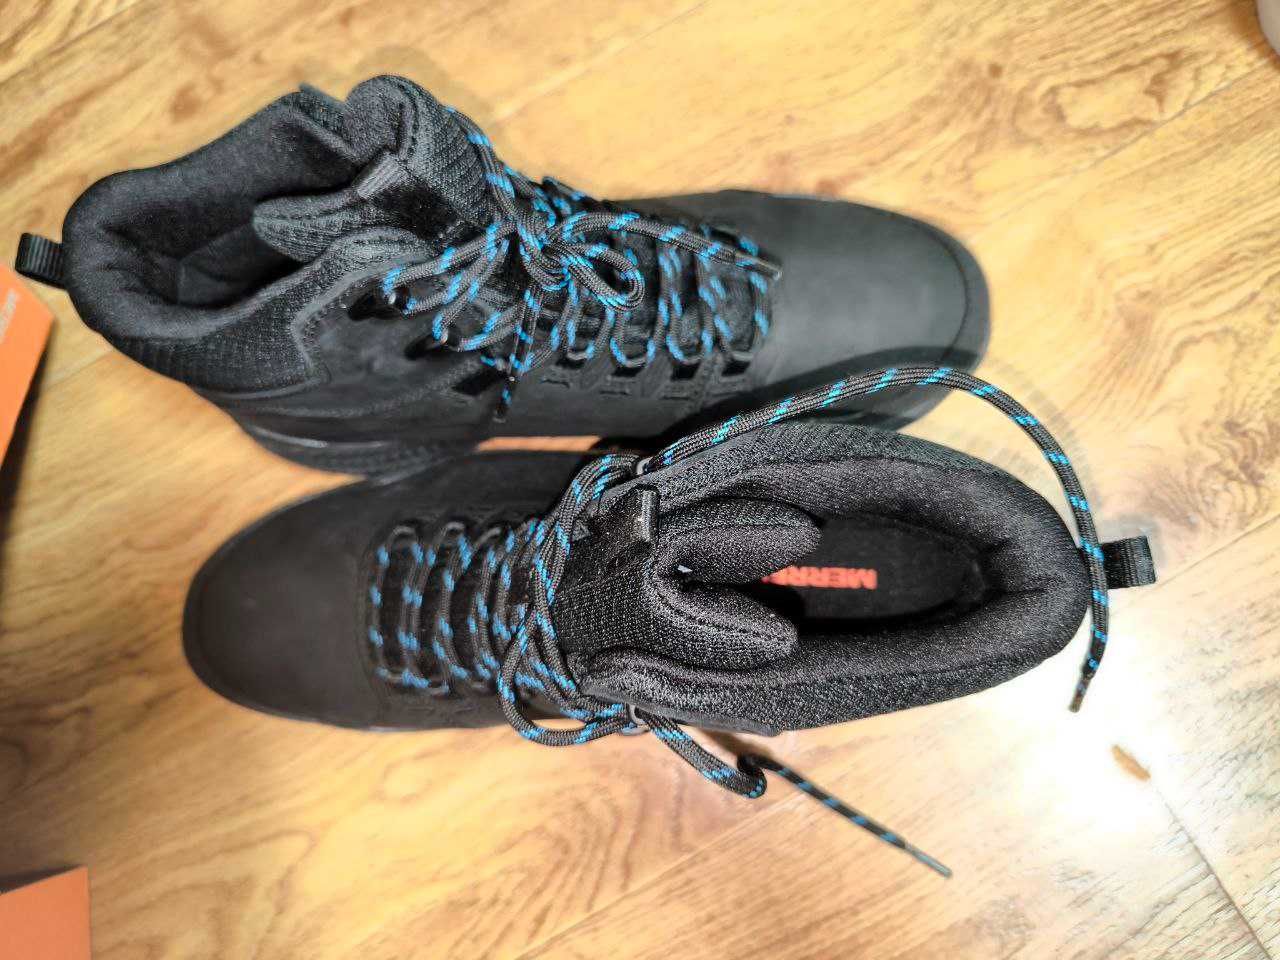 Зимние ботинки MERRELL Waterproof в КОРОБКЕ. В идеальном состоянии